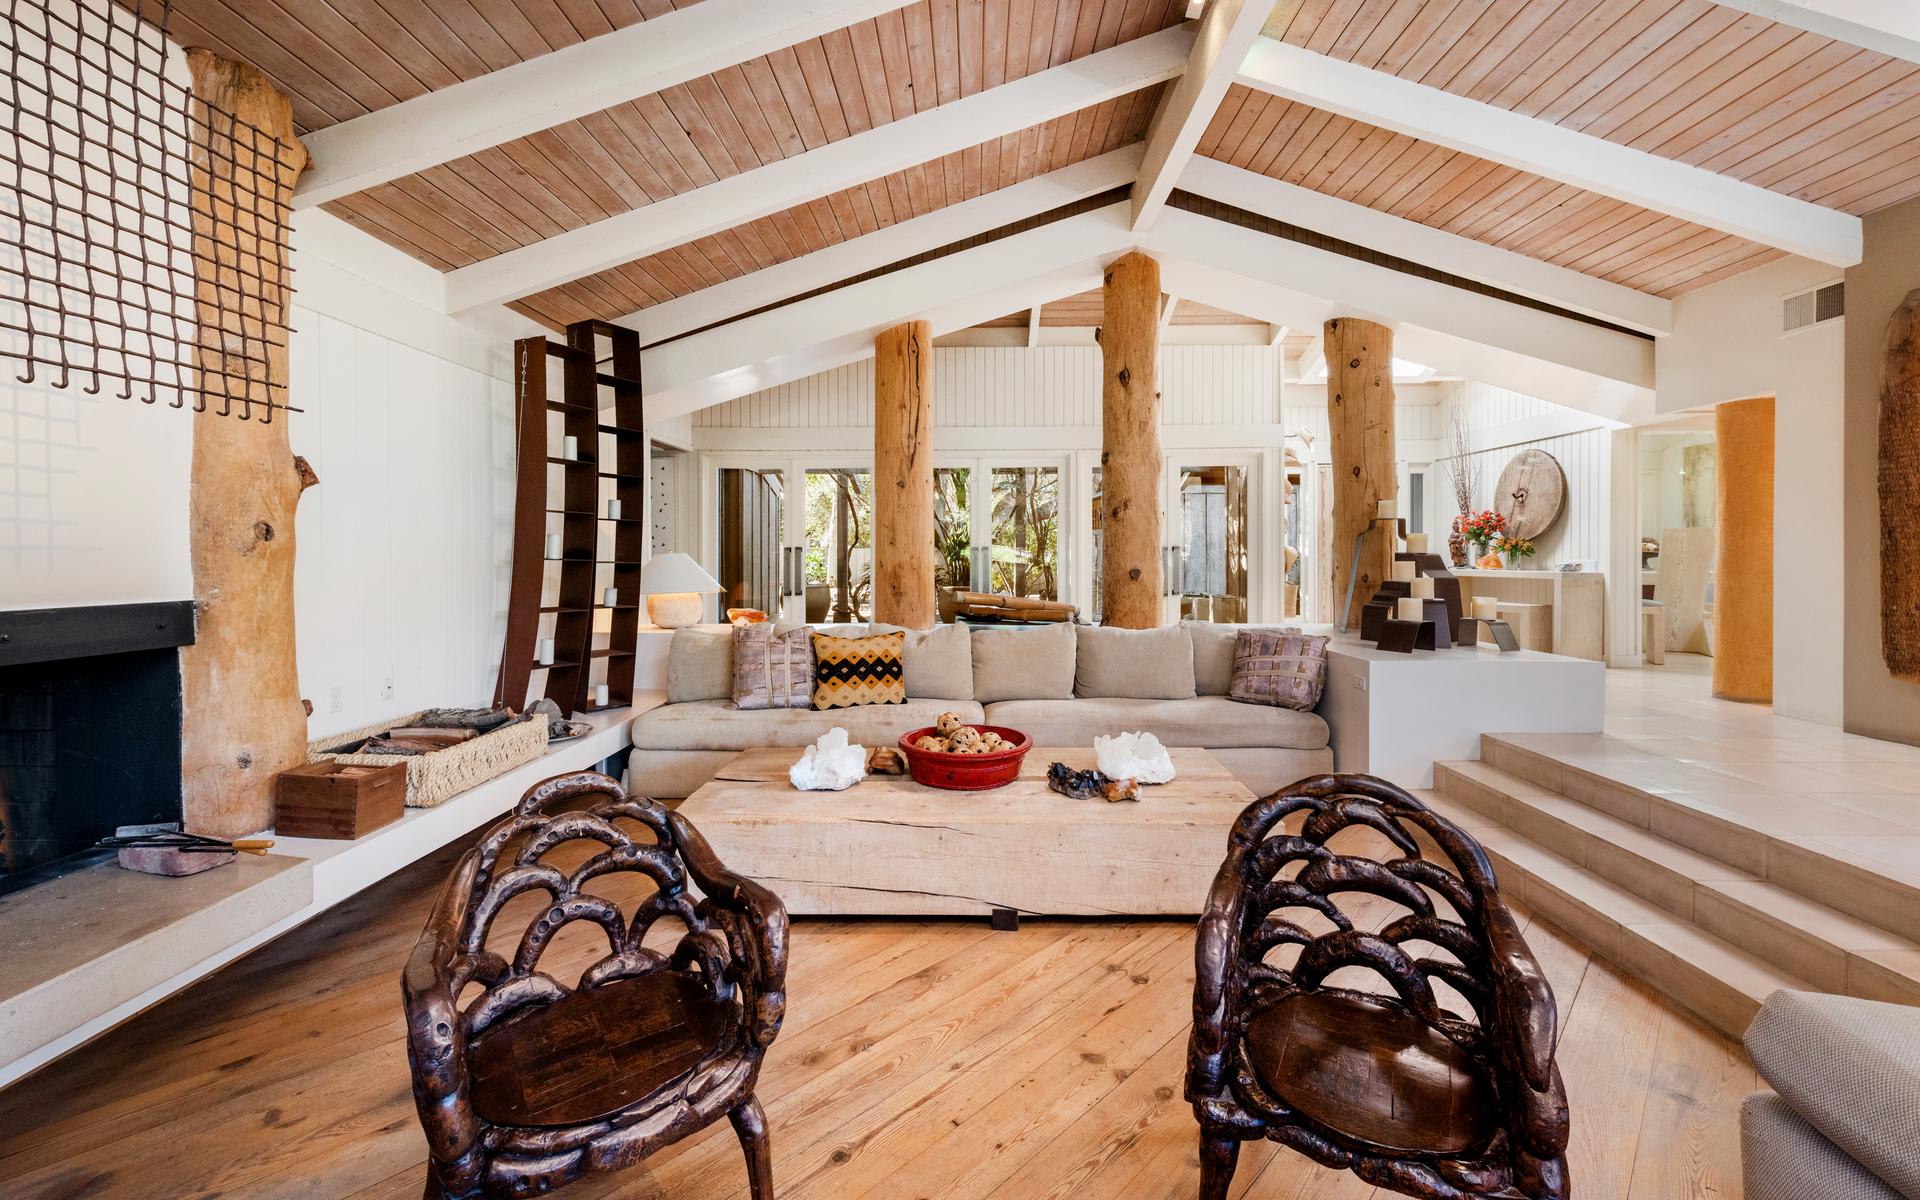 Stora trästockar är placerade på flera ställen i vardagsrummet, vilket ger ett rustikt intryck i det 50 år gamla huset.